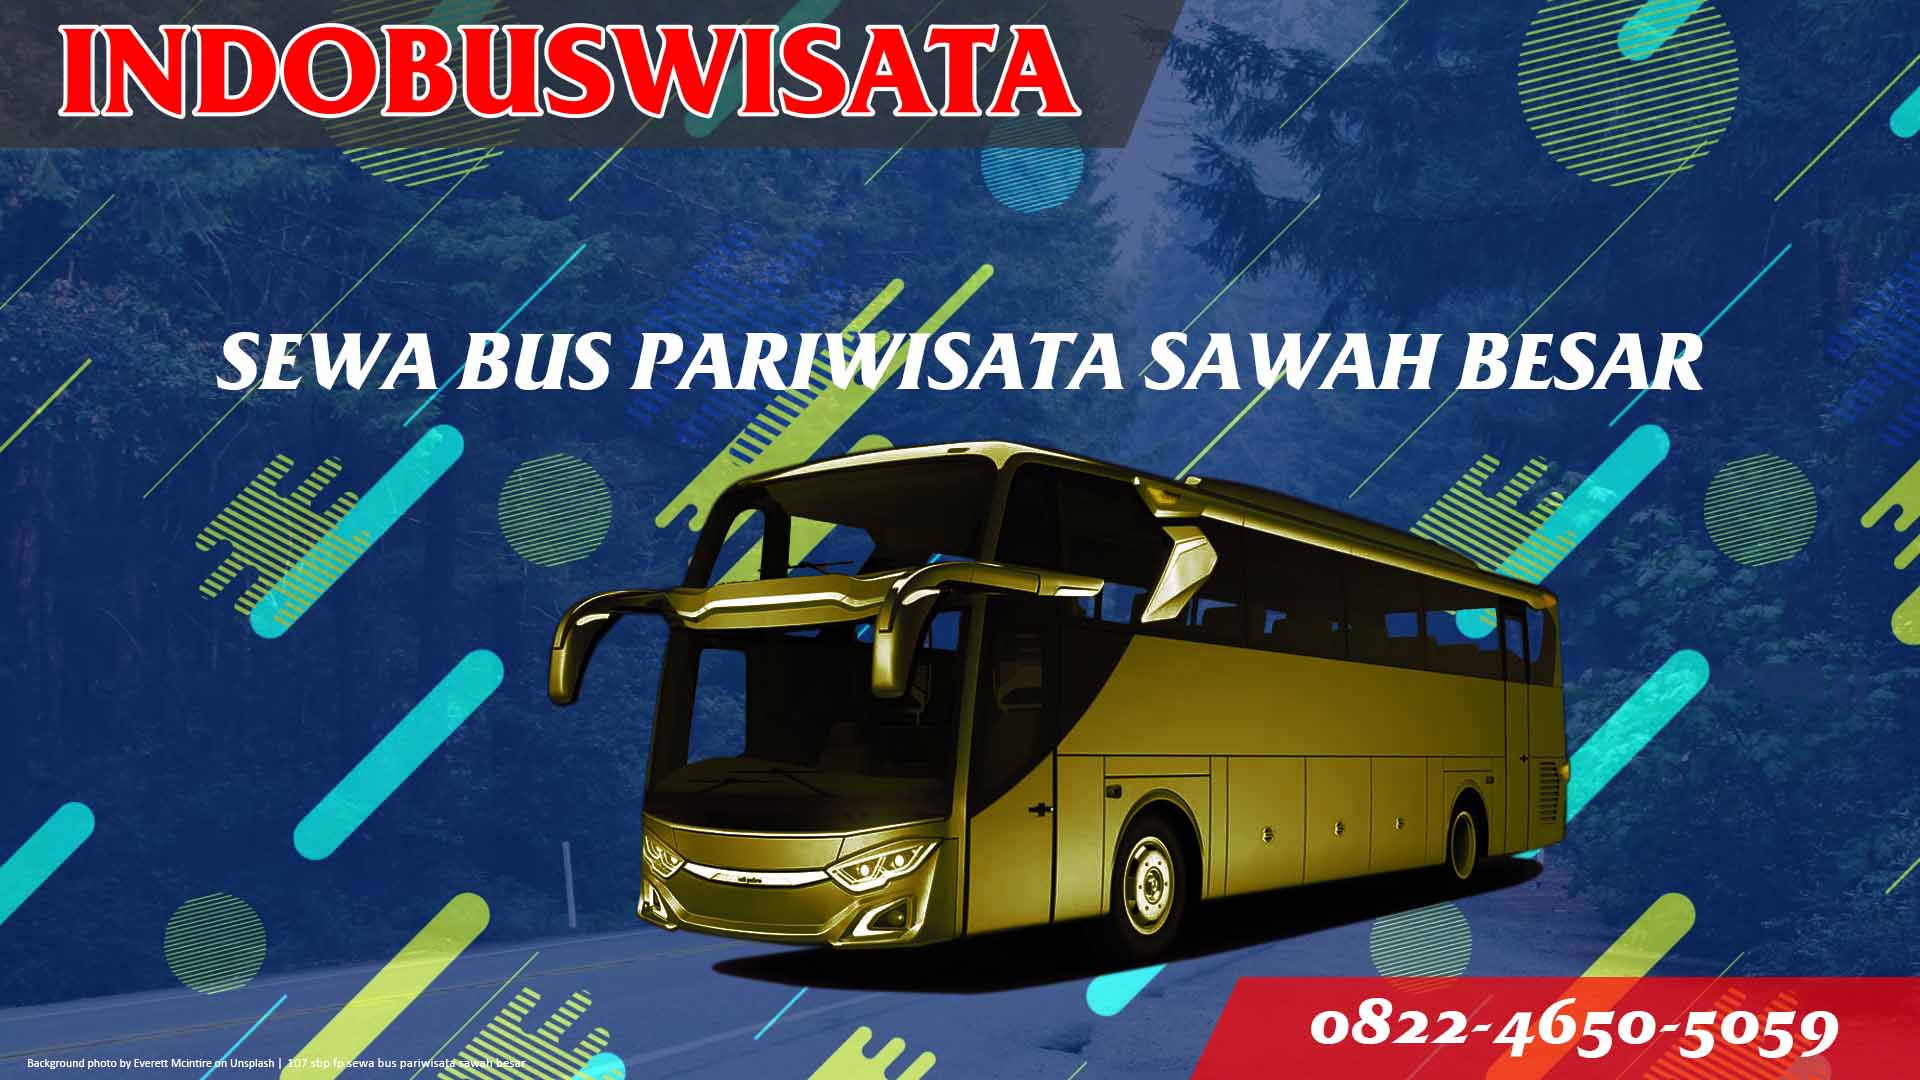 107 Sbp Fp Sewa Bus Pariwisata Sawah Besar Indobuswisata